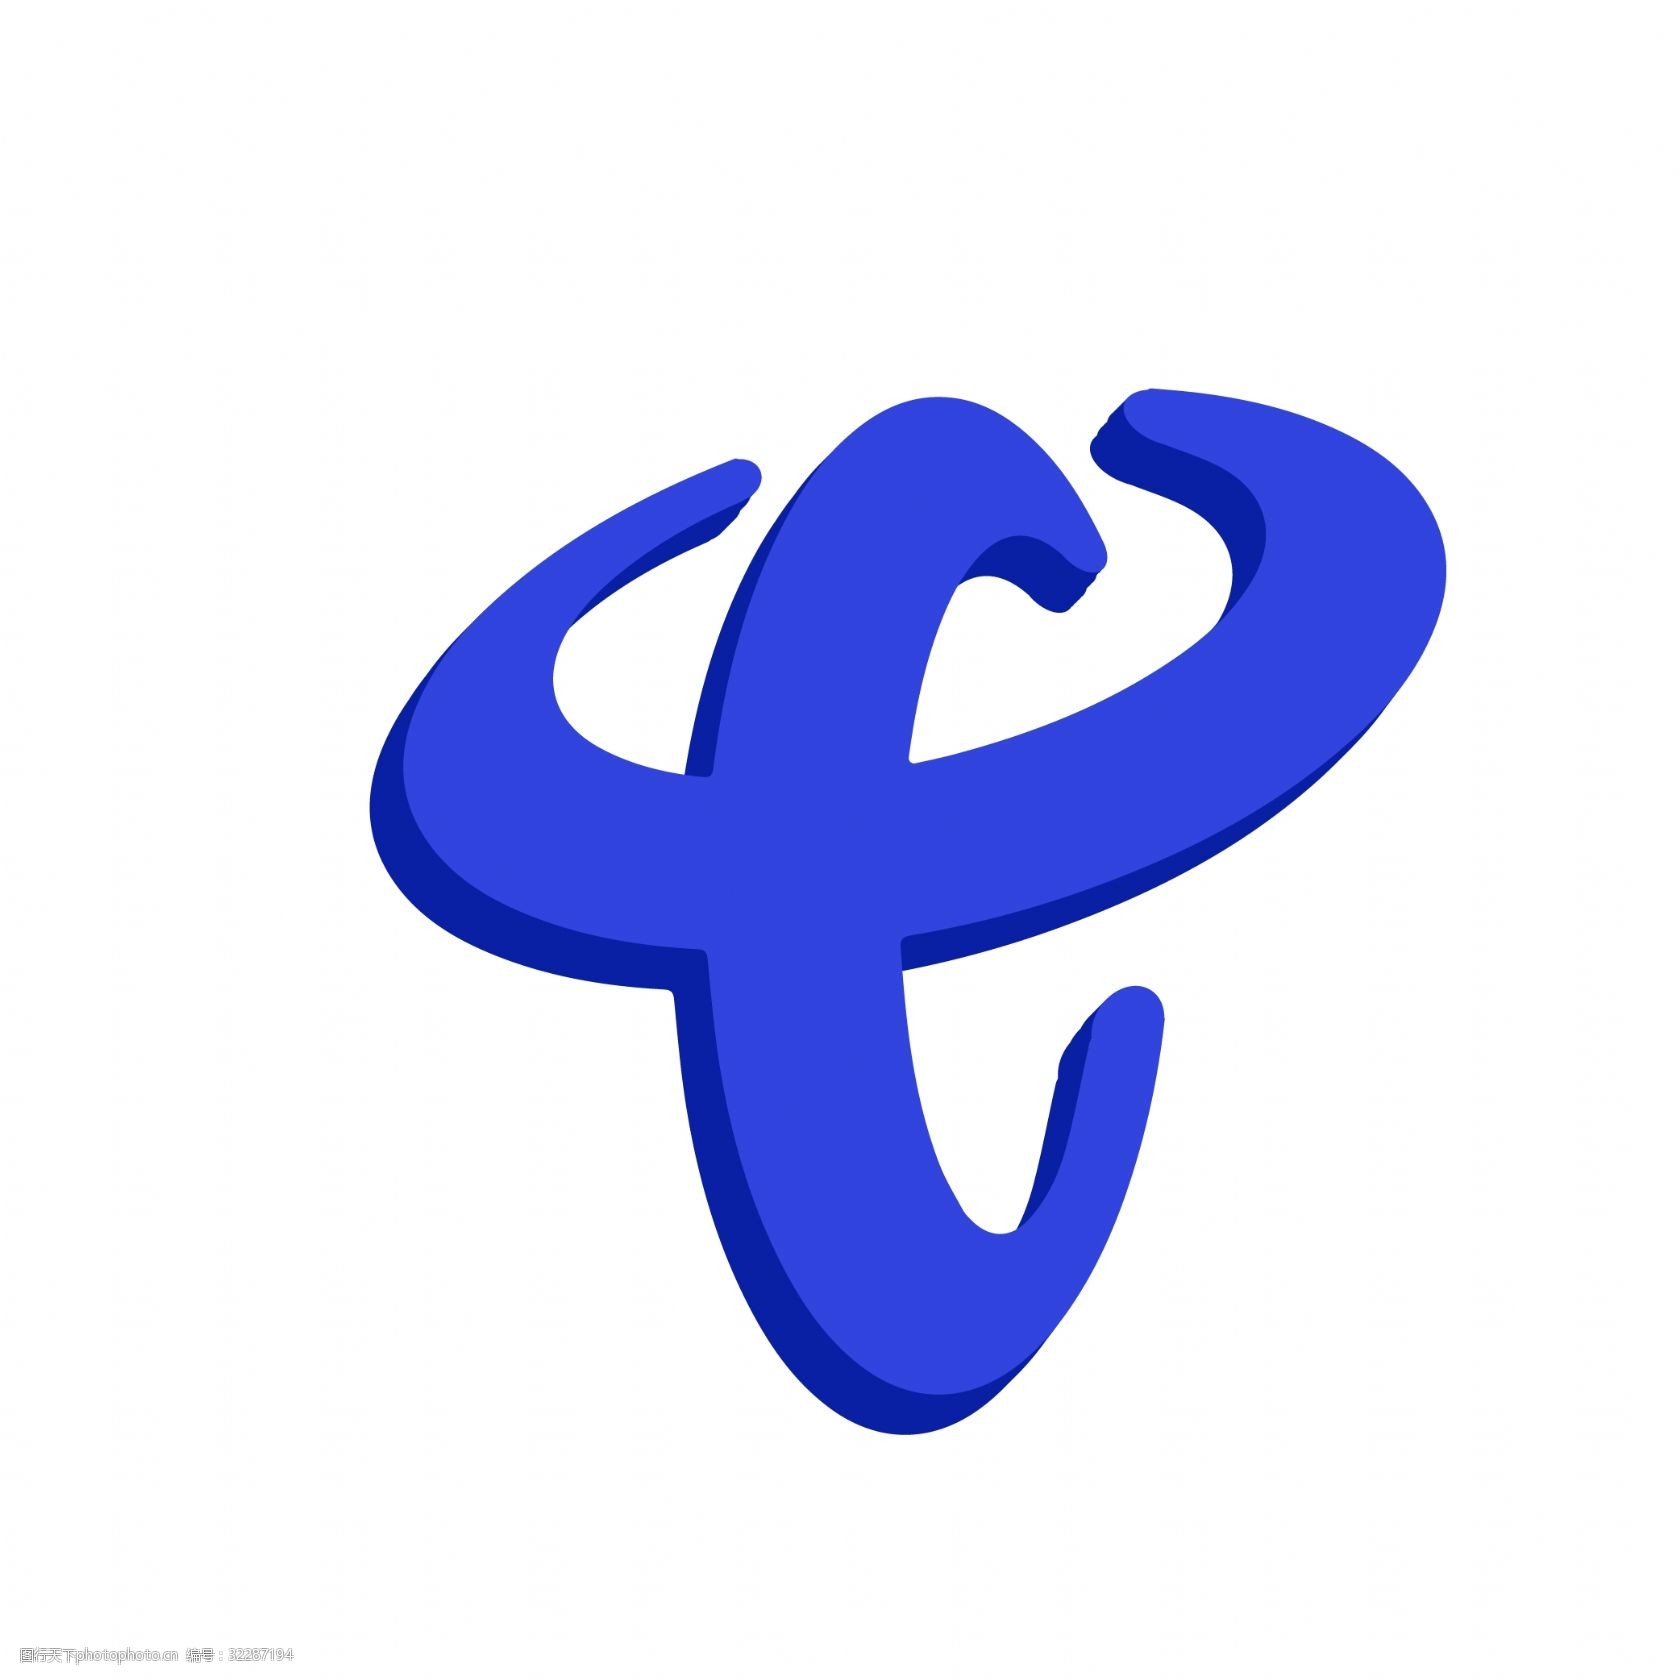 中国电信股份有限公司-logo